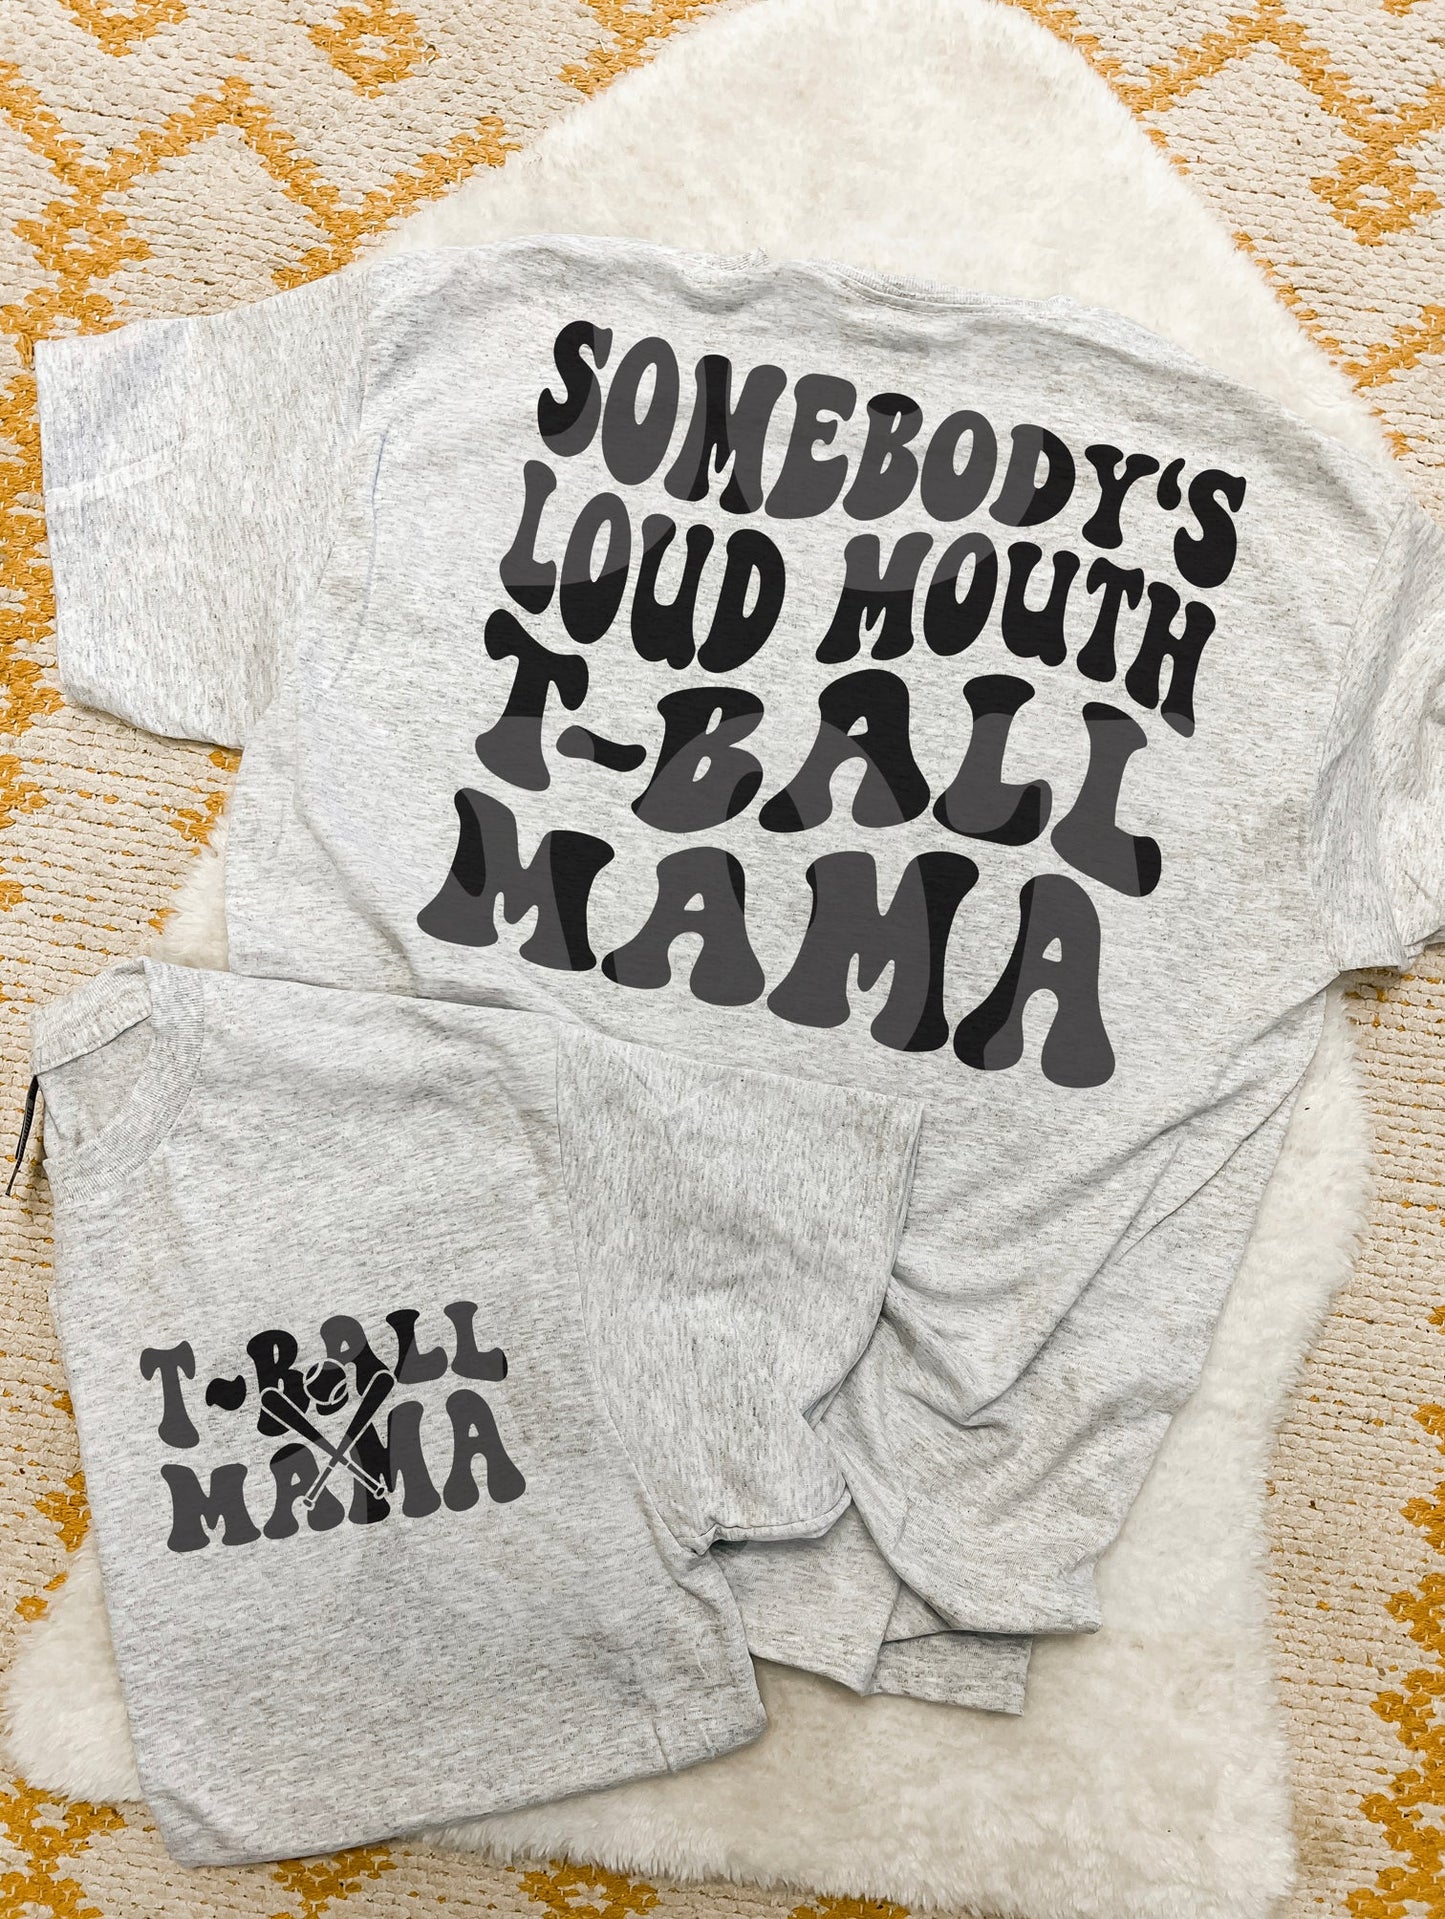 Loud Mouth TBall Mama